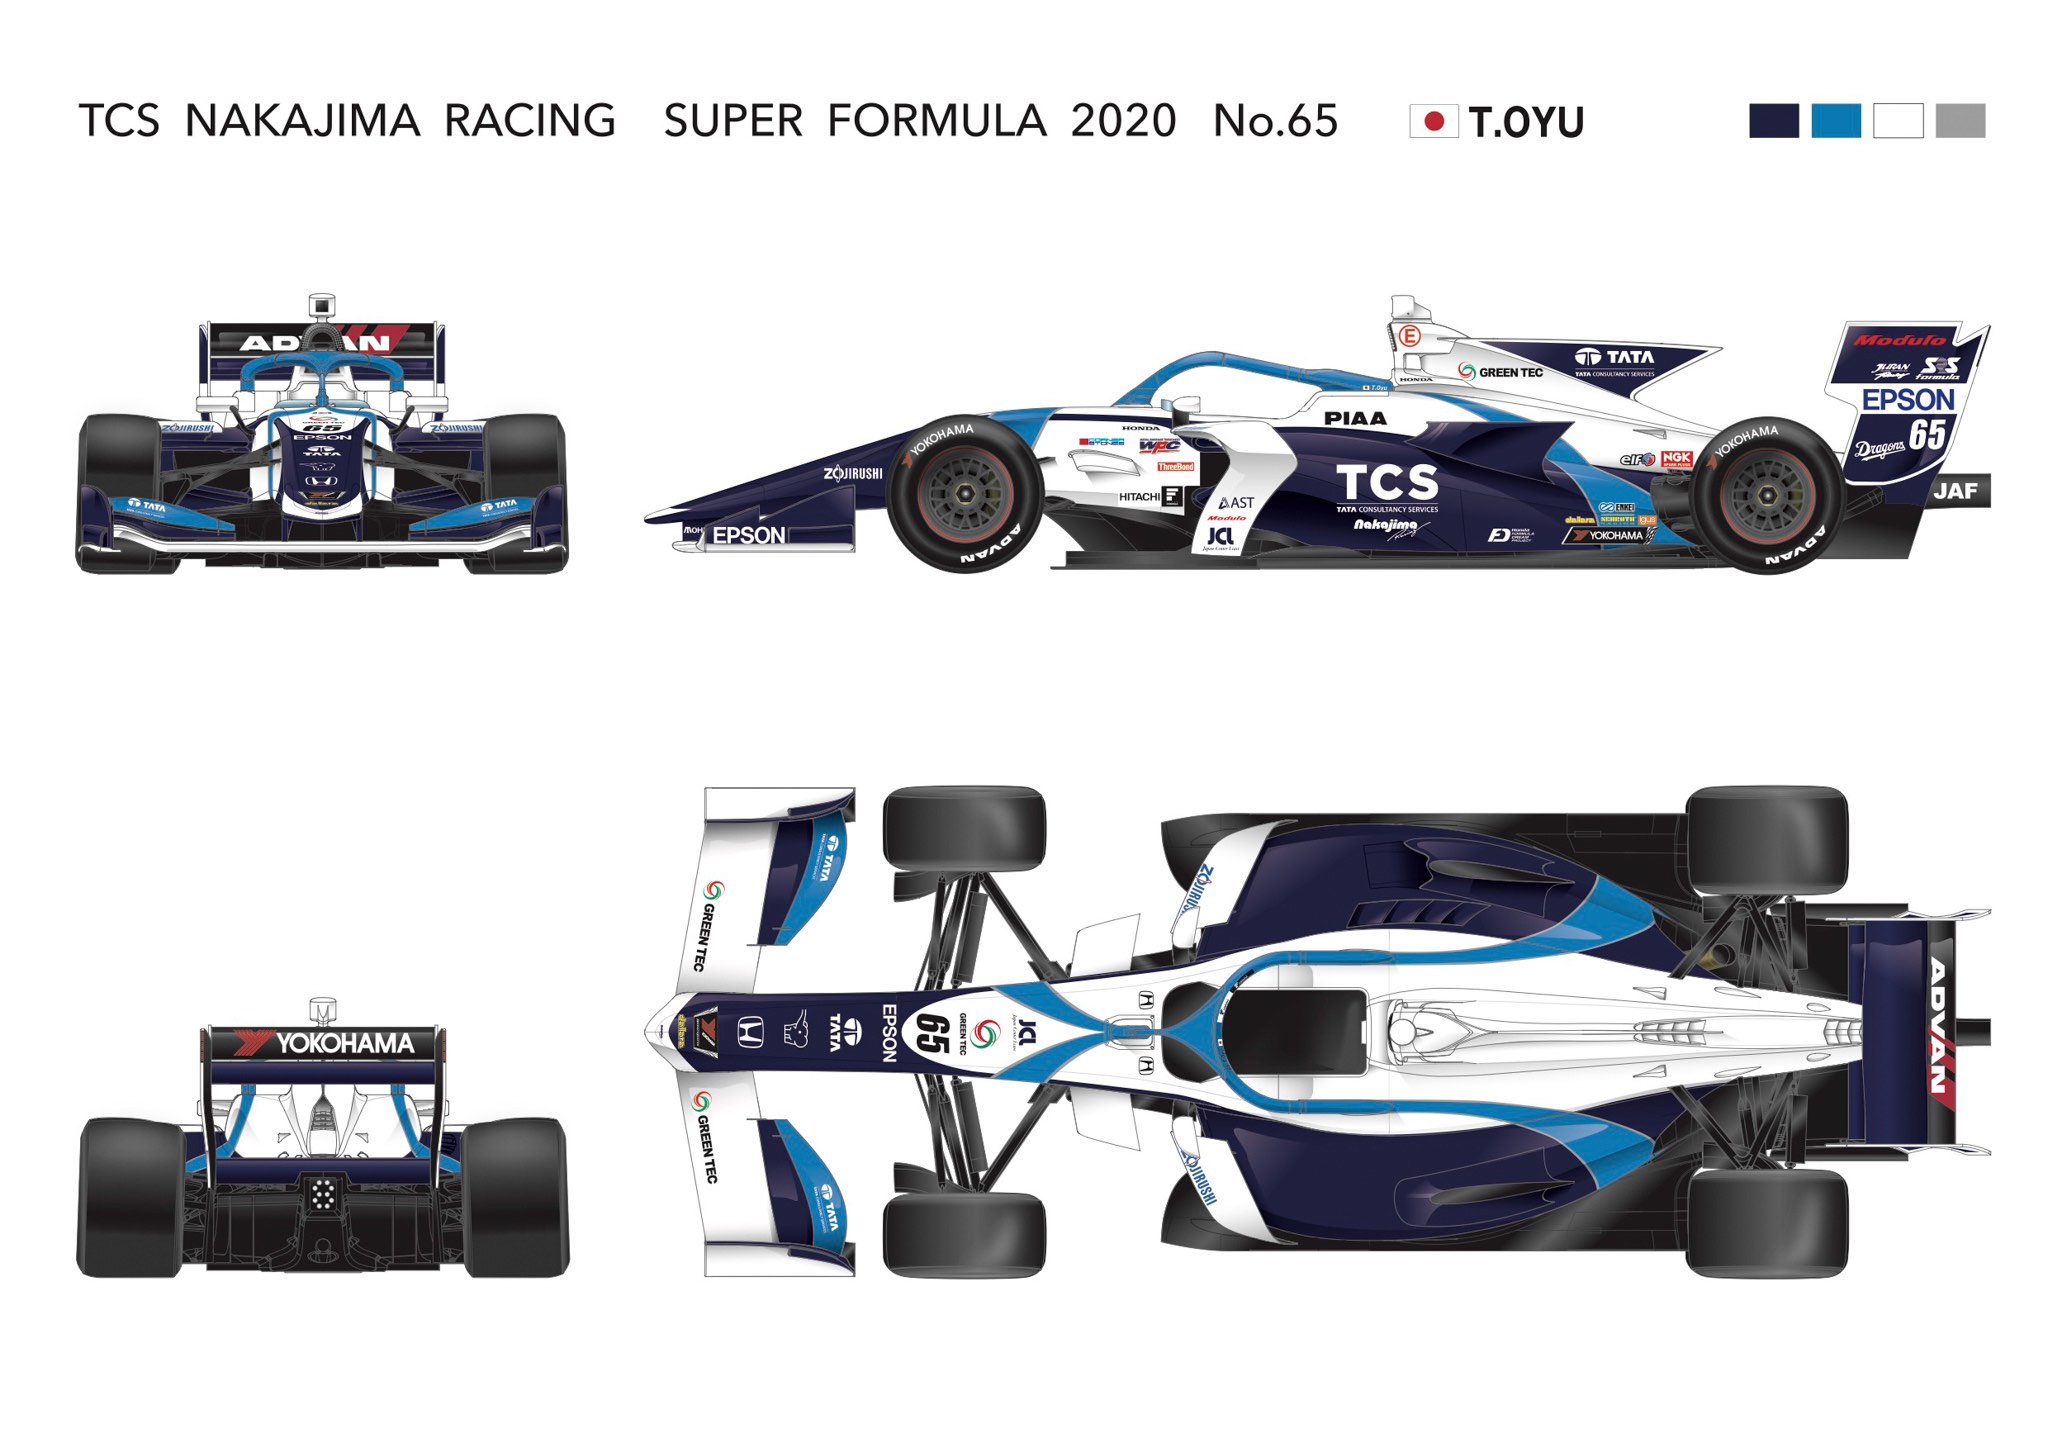 大湯 都史樹 Teams Drivers Race Calendar Super Formula Official Website